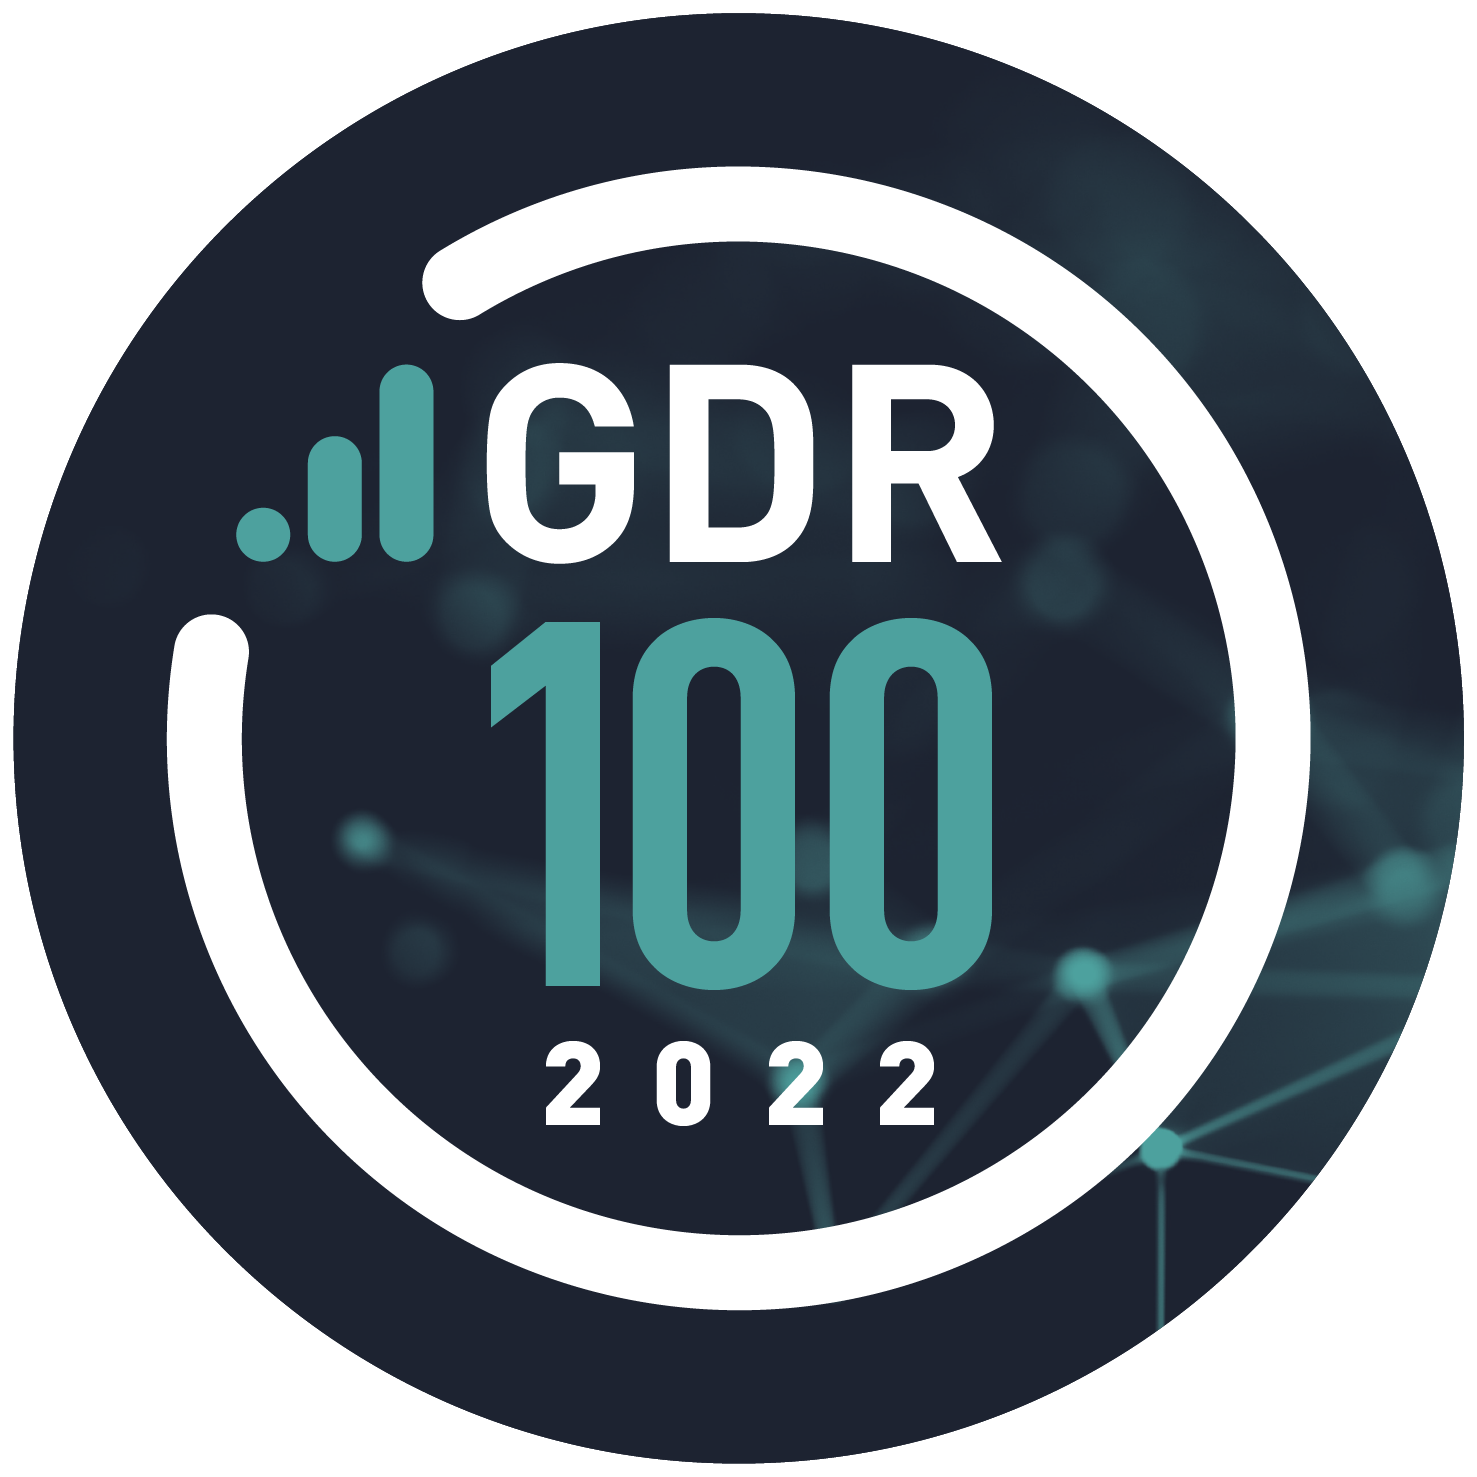 GDR 100 2022